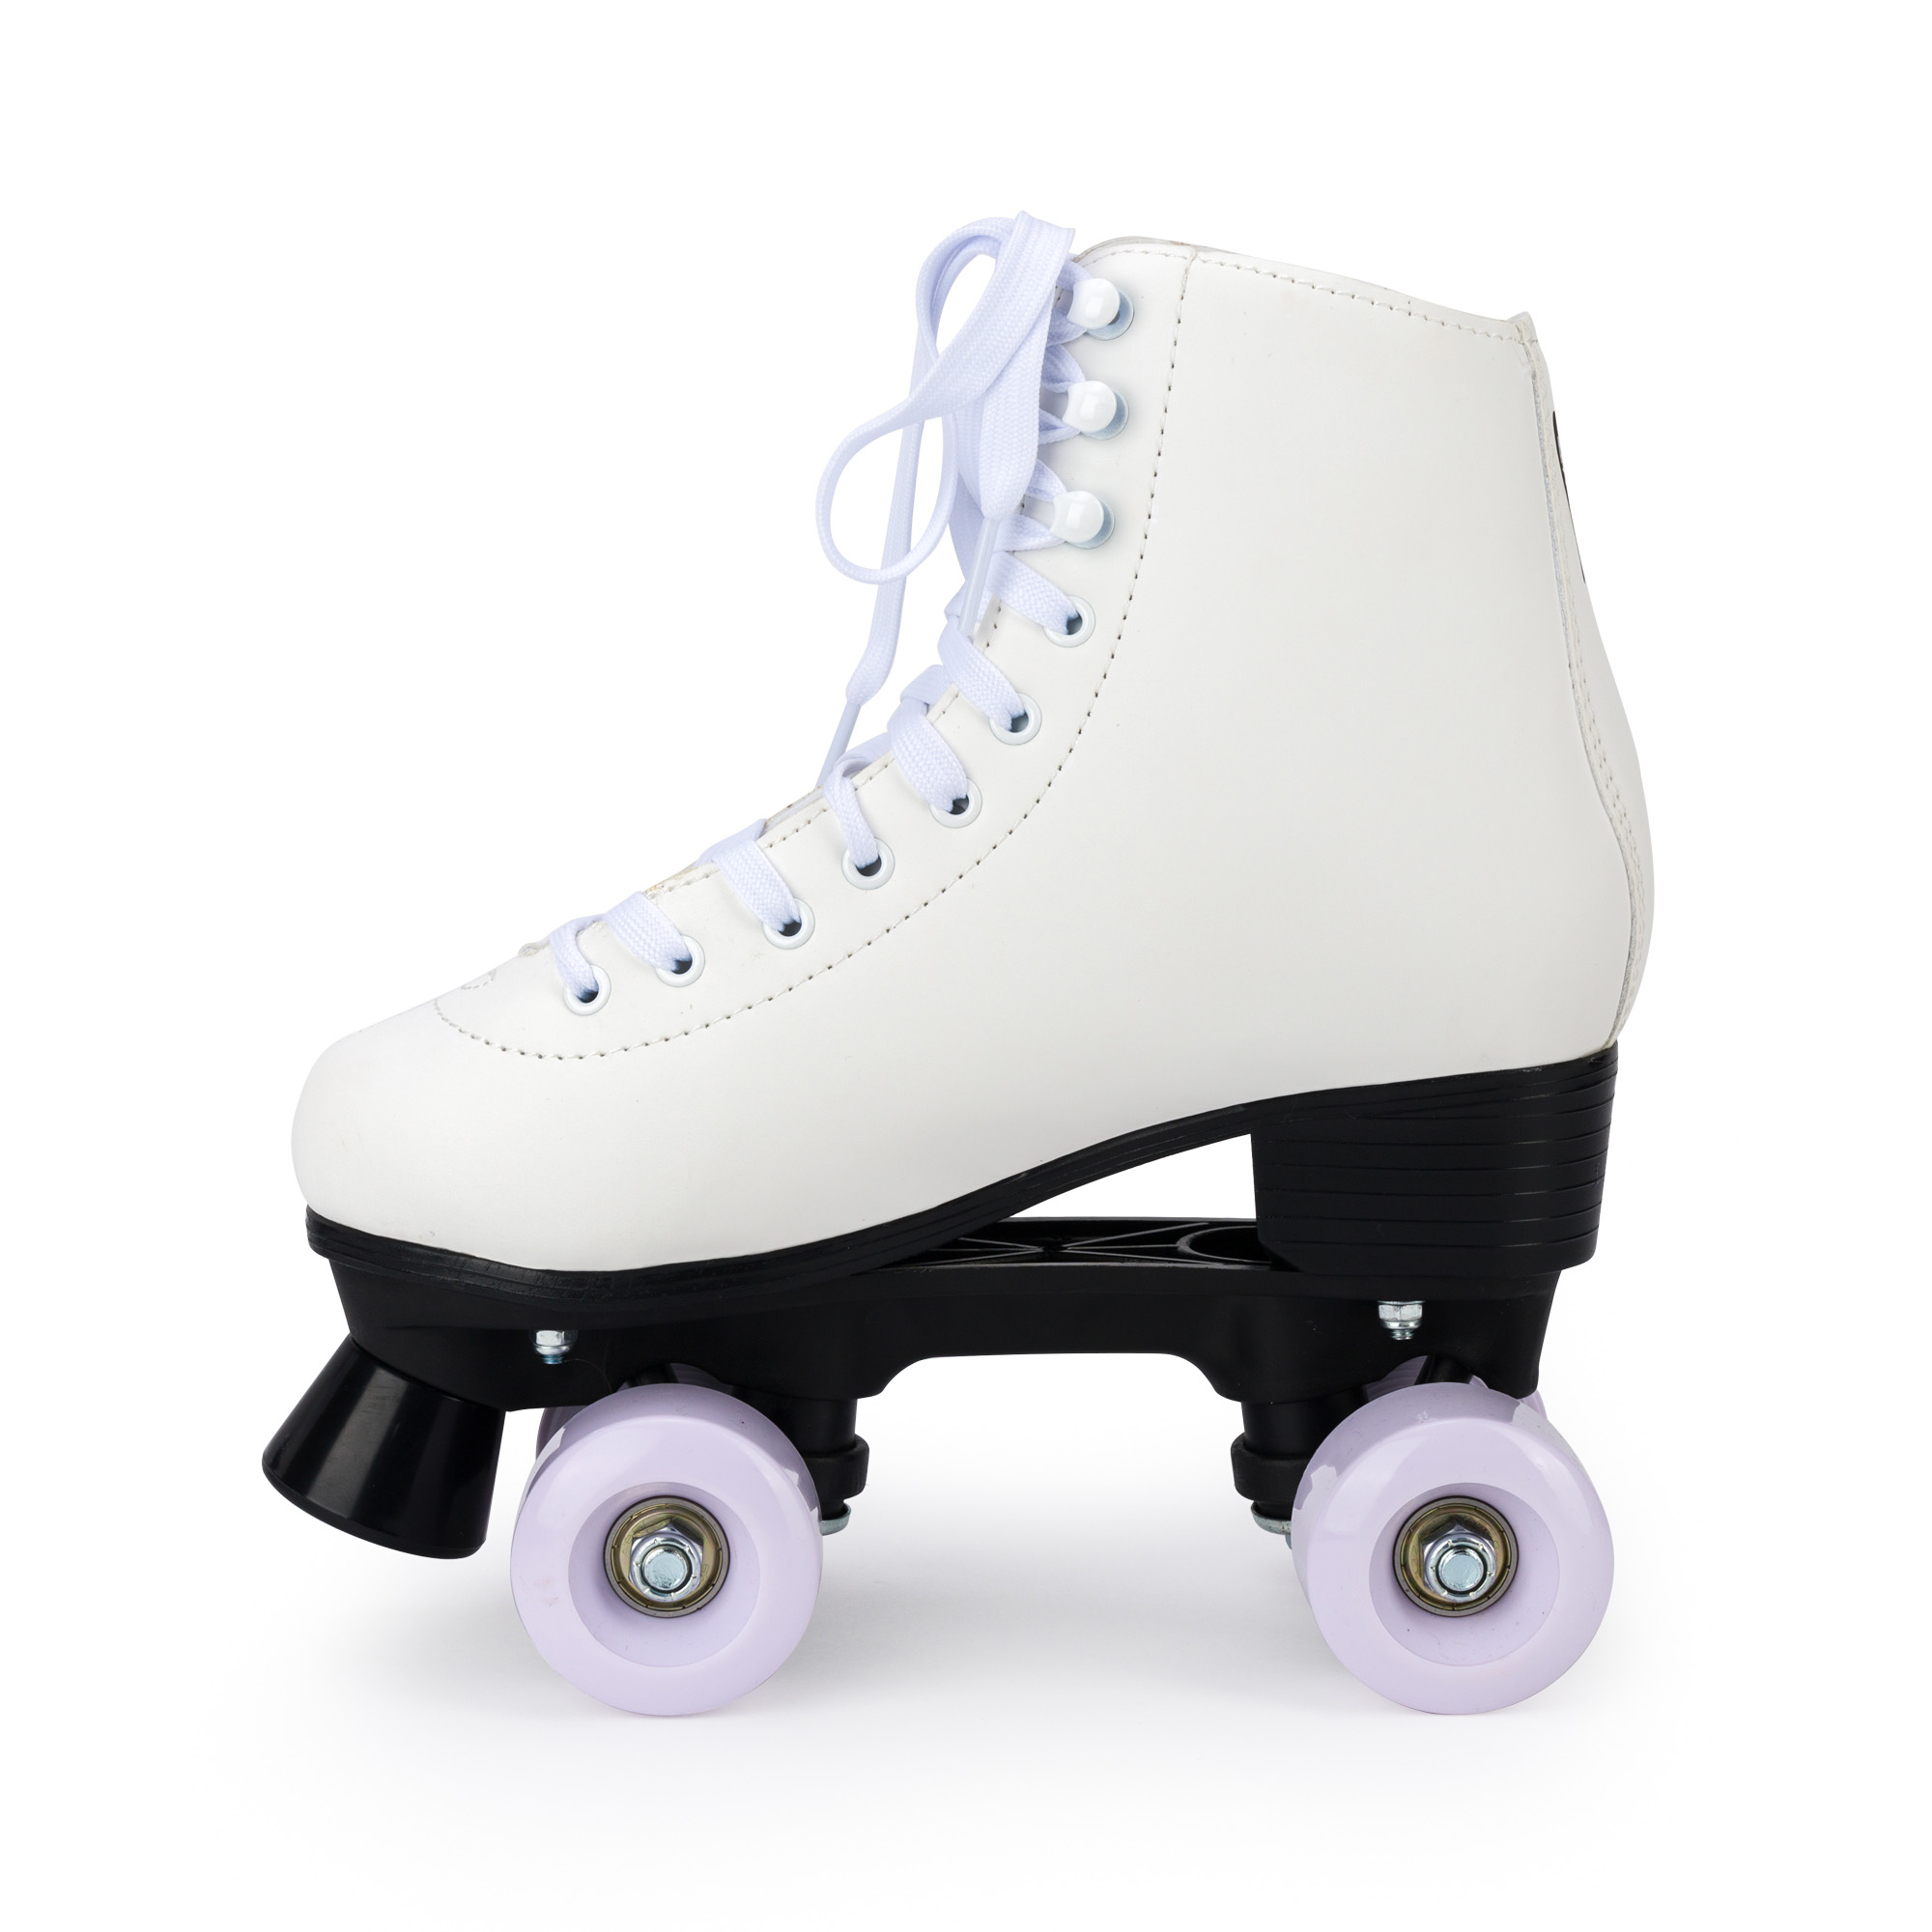 Роликовые коньки SXRide Roller skate YXSKT04WPUR36 белые с фиолетово-розовым орнаментом 36 - фото 3